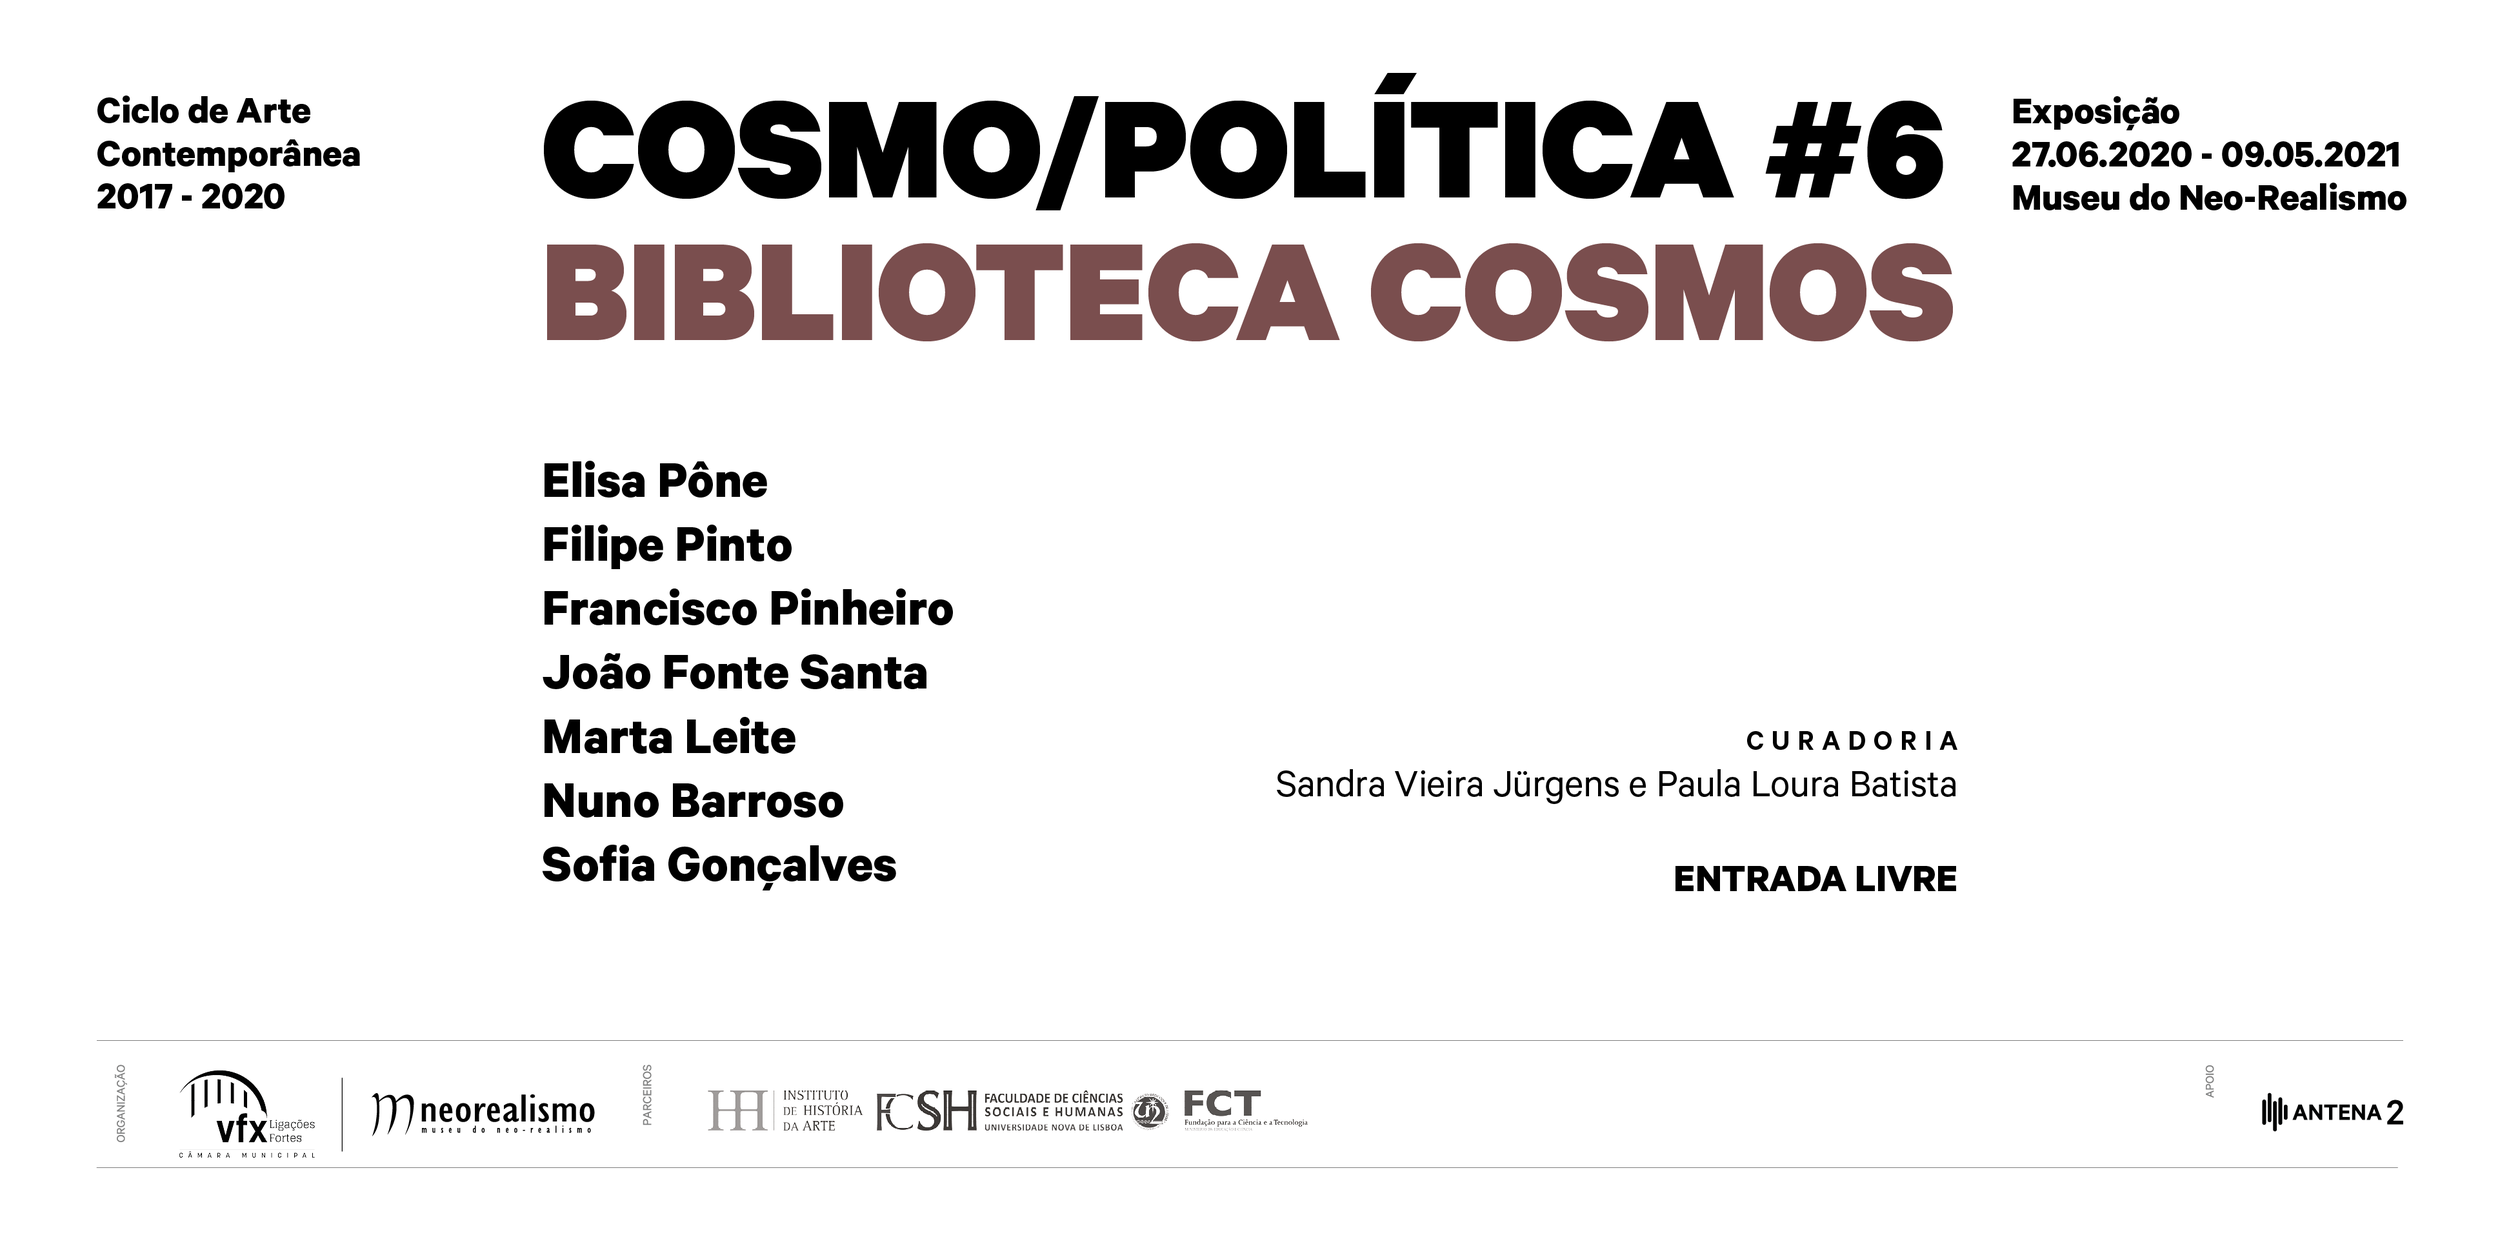 COSMO/POLÍTICA #6: Biblioteca Cosmos